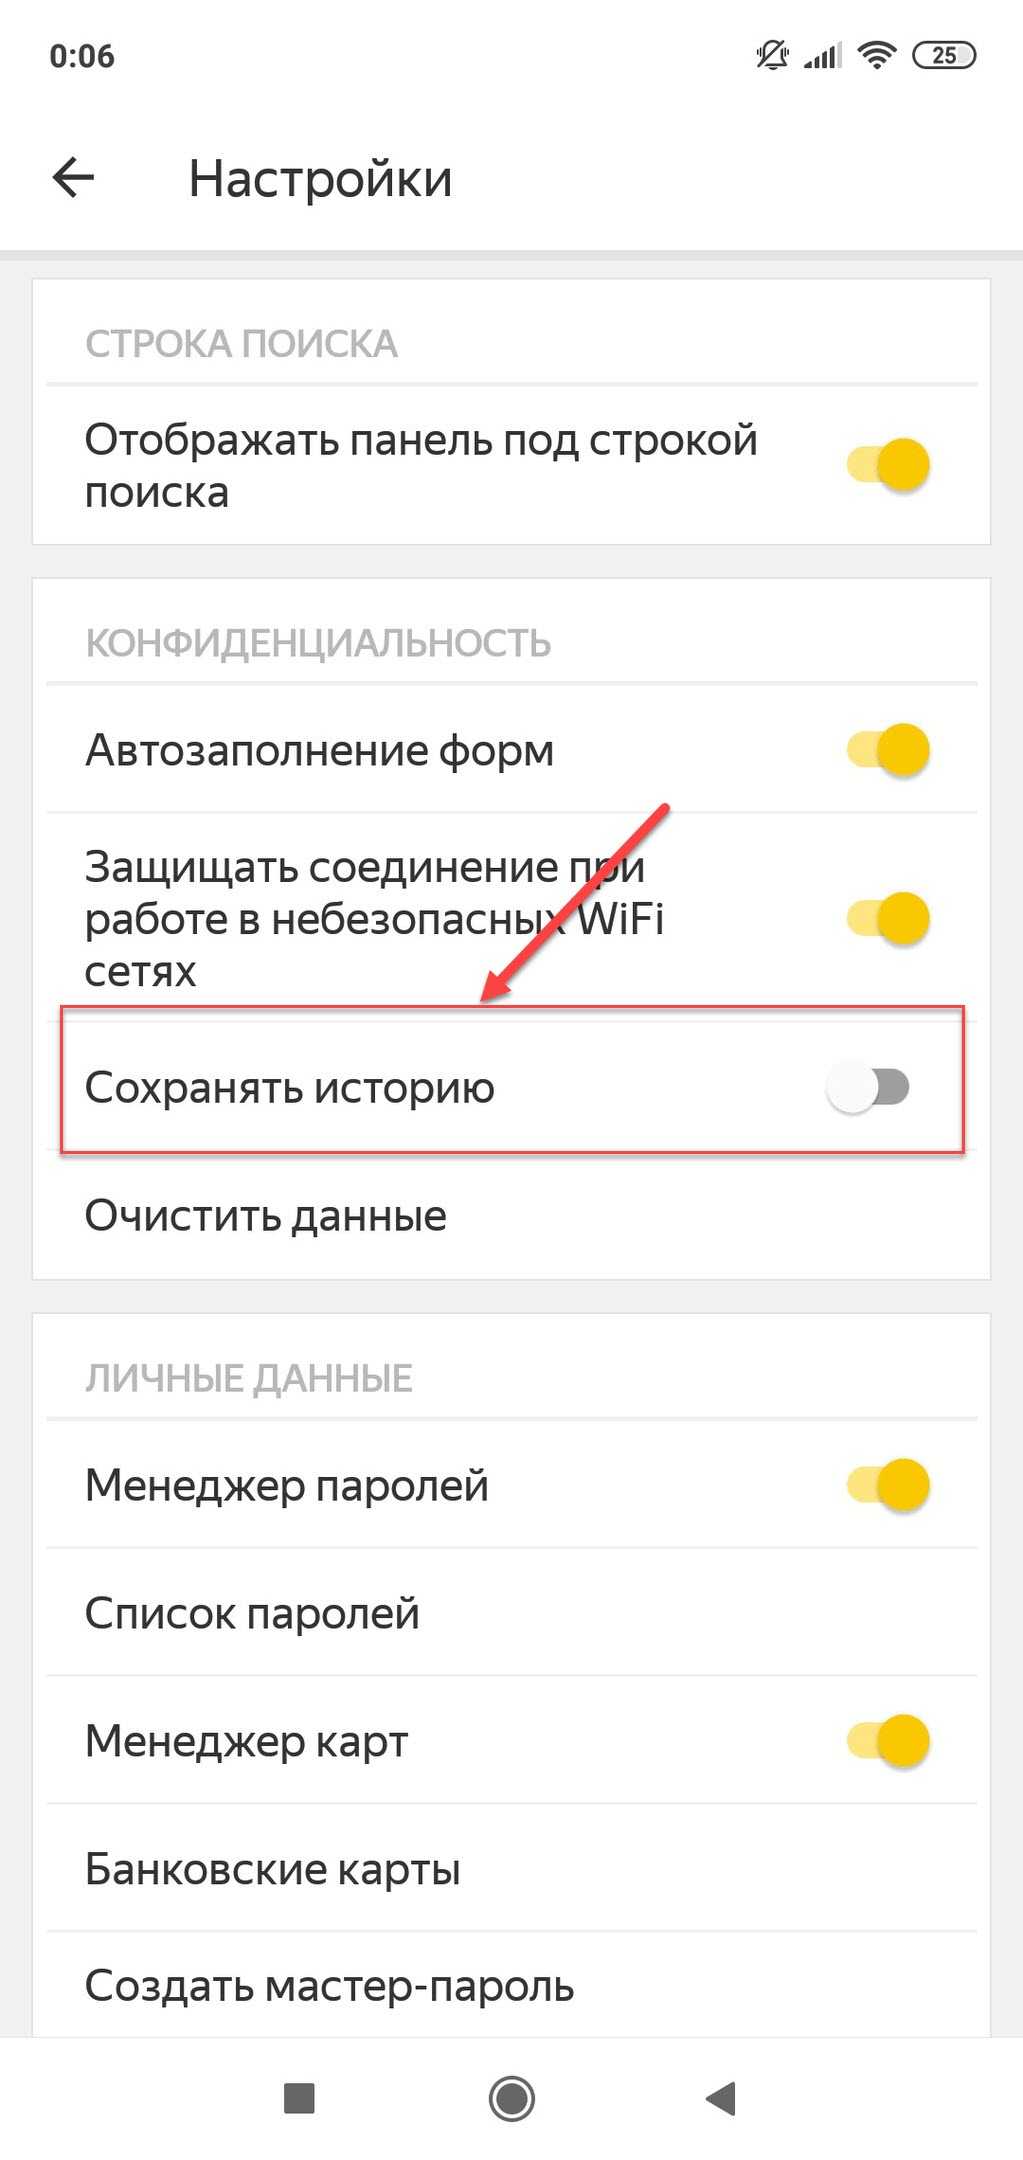 Как сохранять историю в яндексе на телефоне. Очистить историю поиска в Яндексе на телефоне андроид. Как очистить историю в Яндексе на телефоне. Как удалить историю поиска в Яндексе на телефоне. Очистка истории в Яндексе на телефоне.